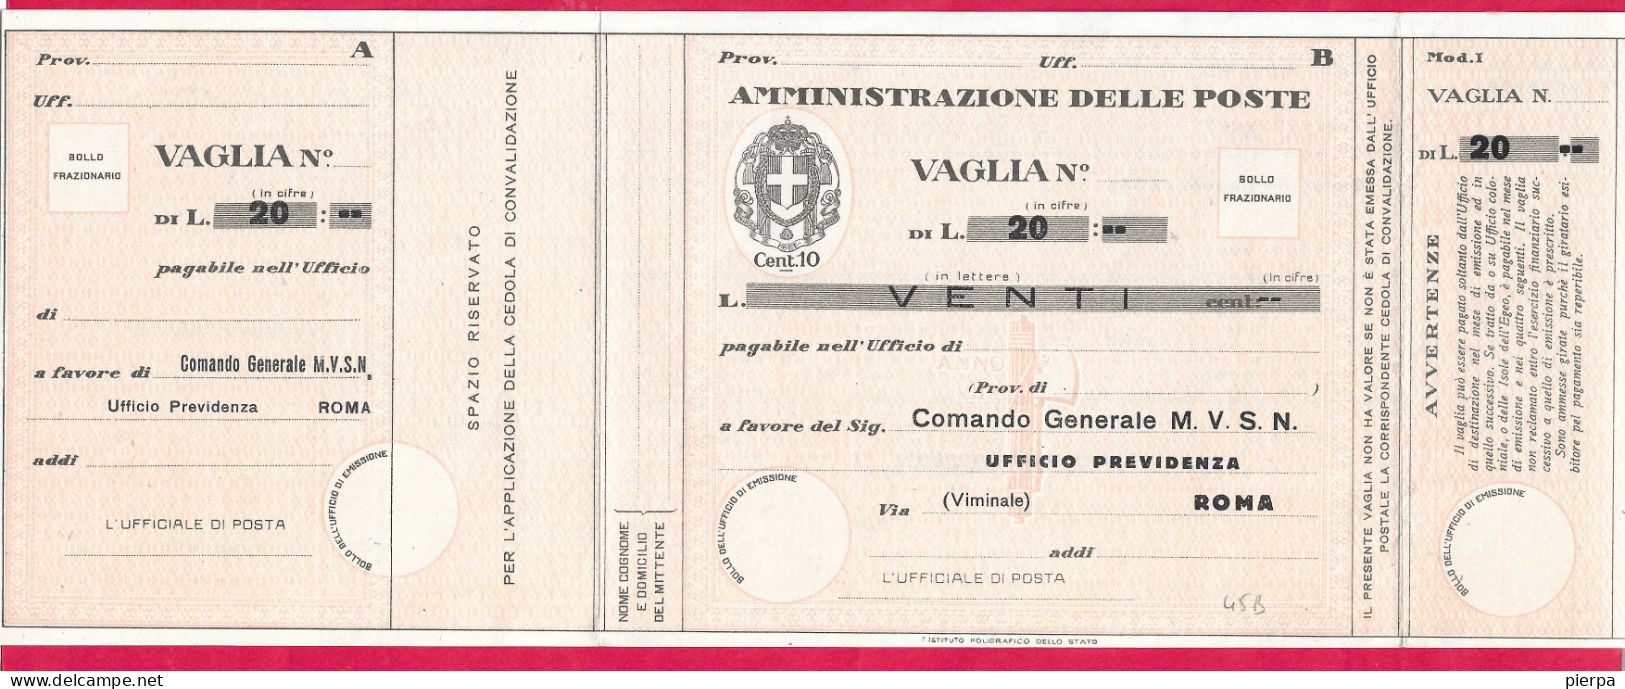 MODULO VAGLIA POSTALE C.10 (CAT. INT. 45/B) PRECOMPILATO M.V.S.N. LIRE 20 - NON VIAGGIATO - Mandatsgebühr